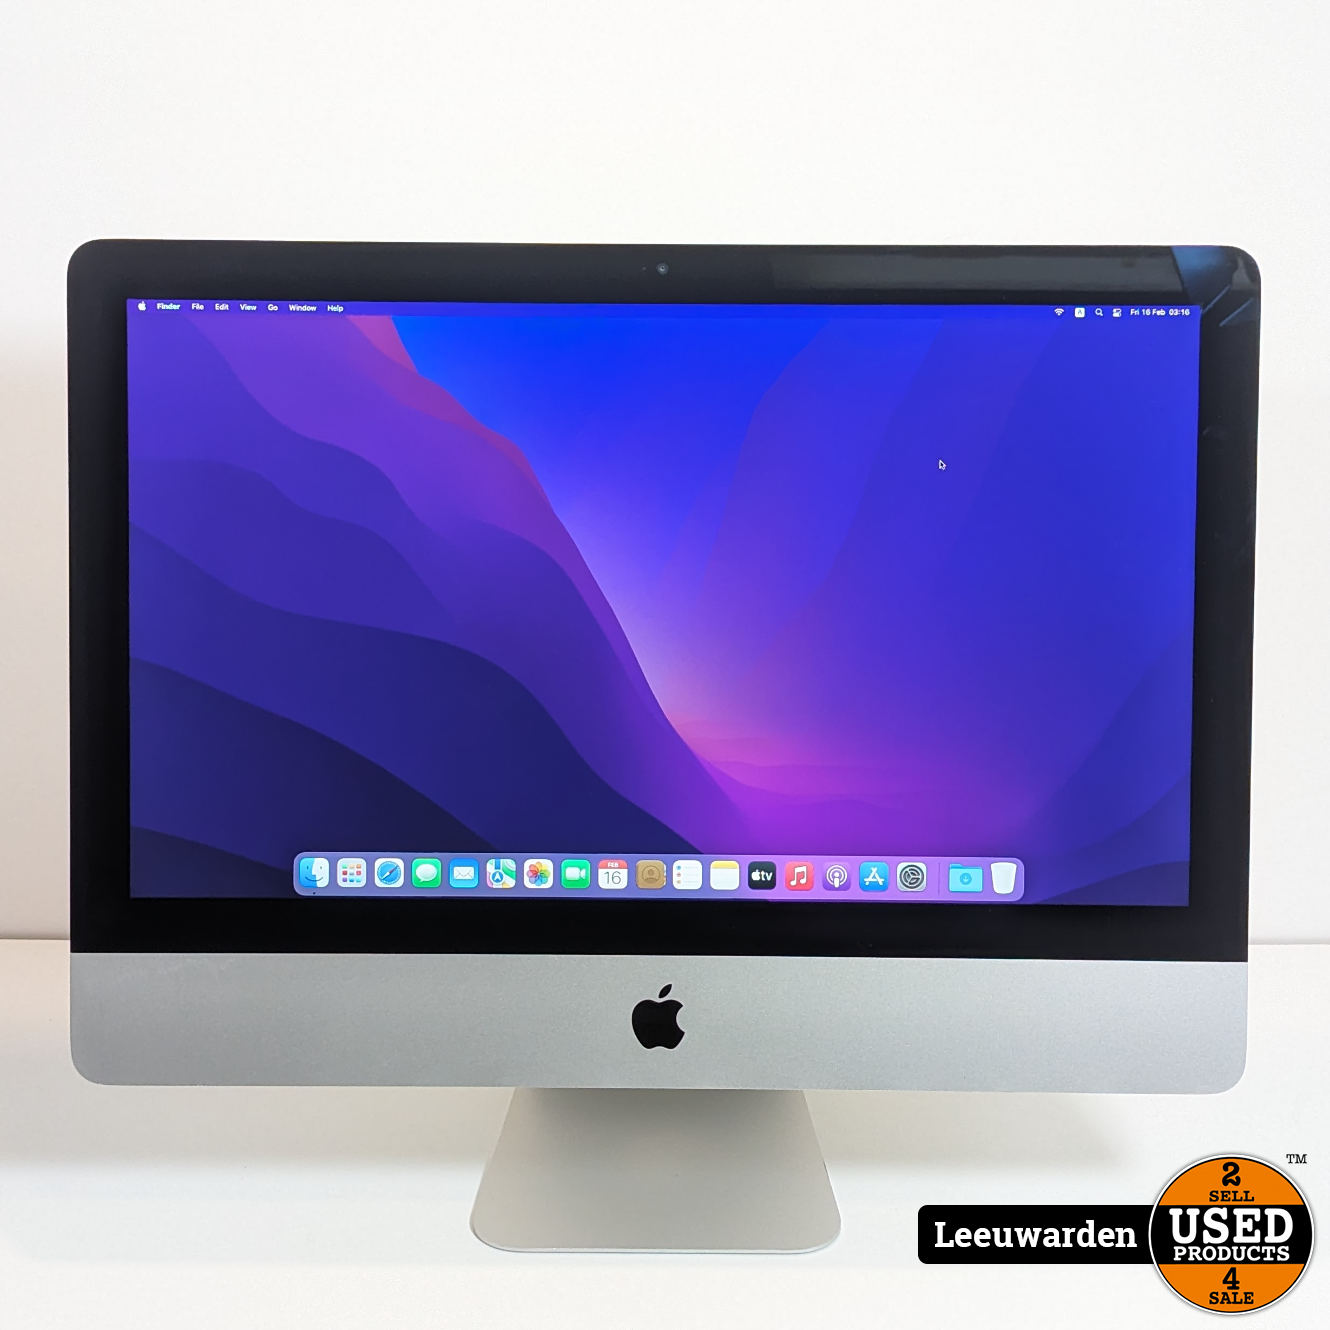 iMac(21.5-inch, Late 2012) - デスクトップ型PC